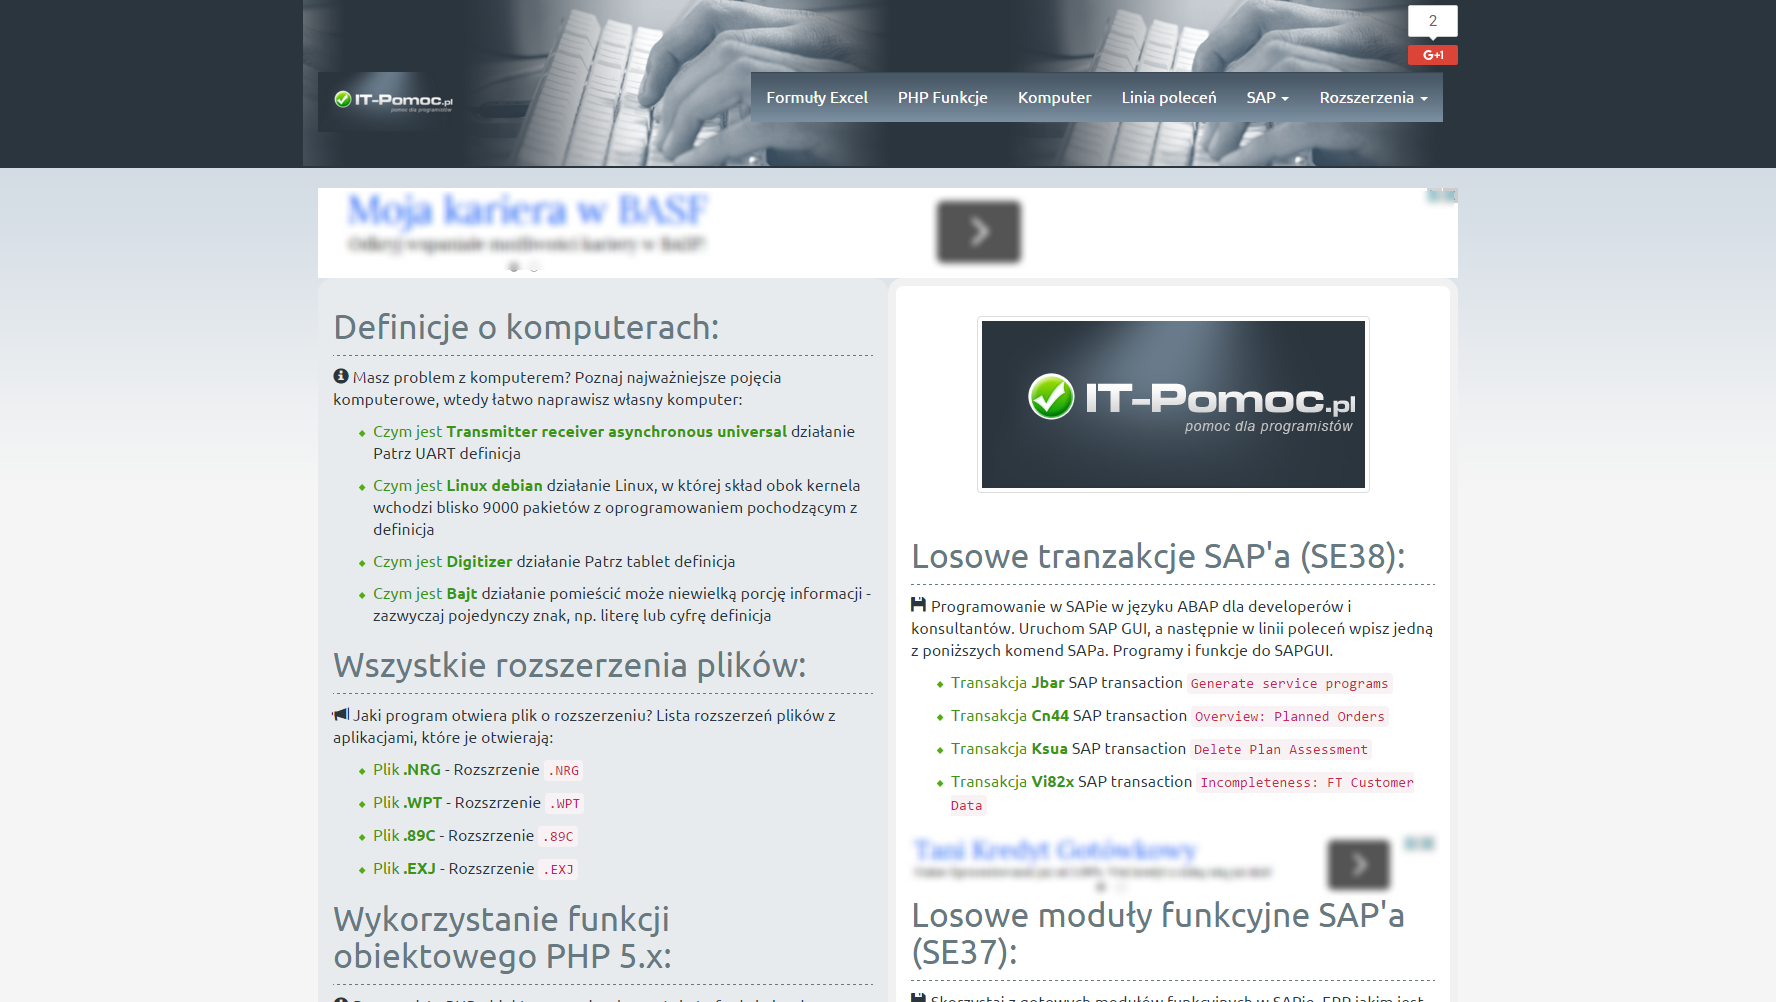 Project IT-Pomoc.pl